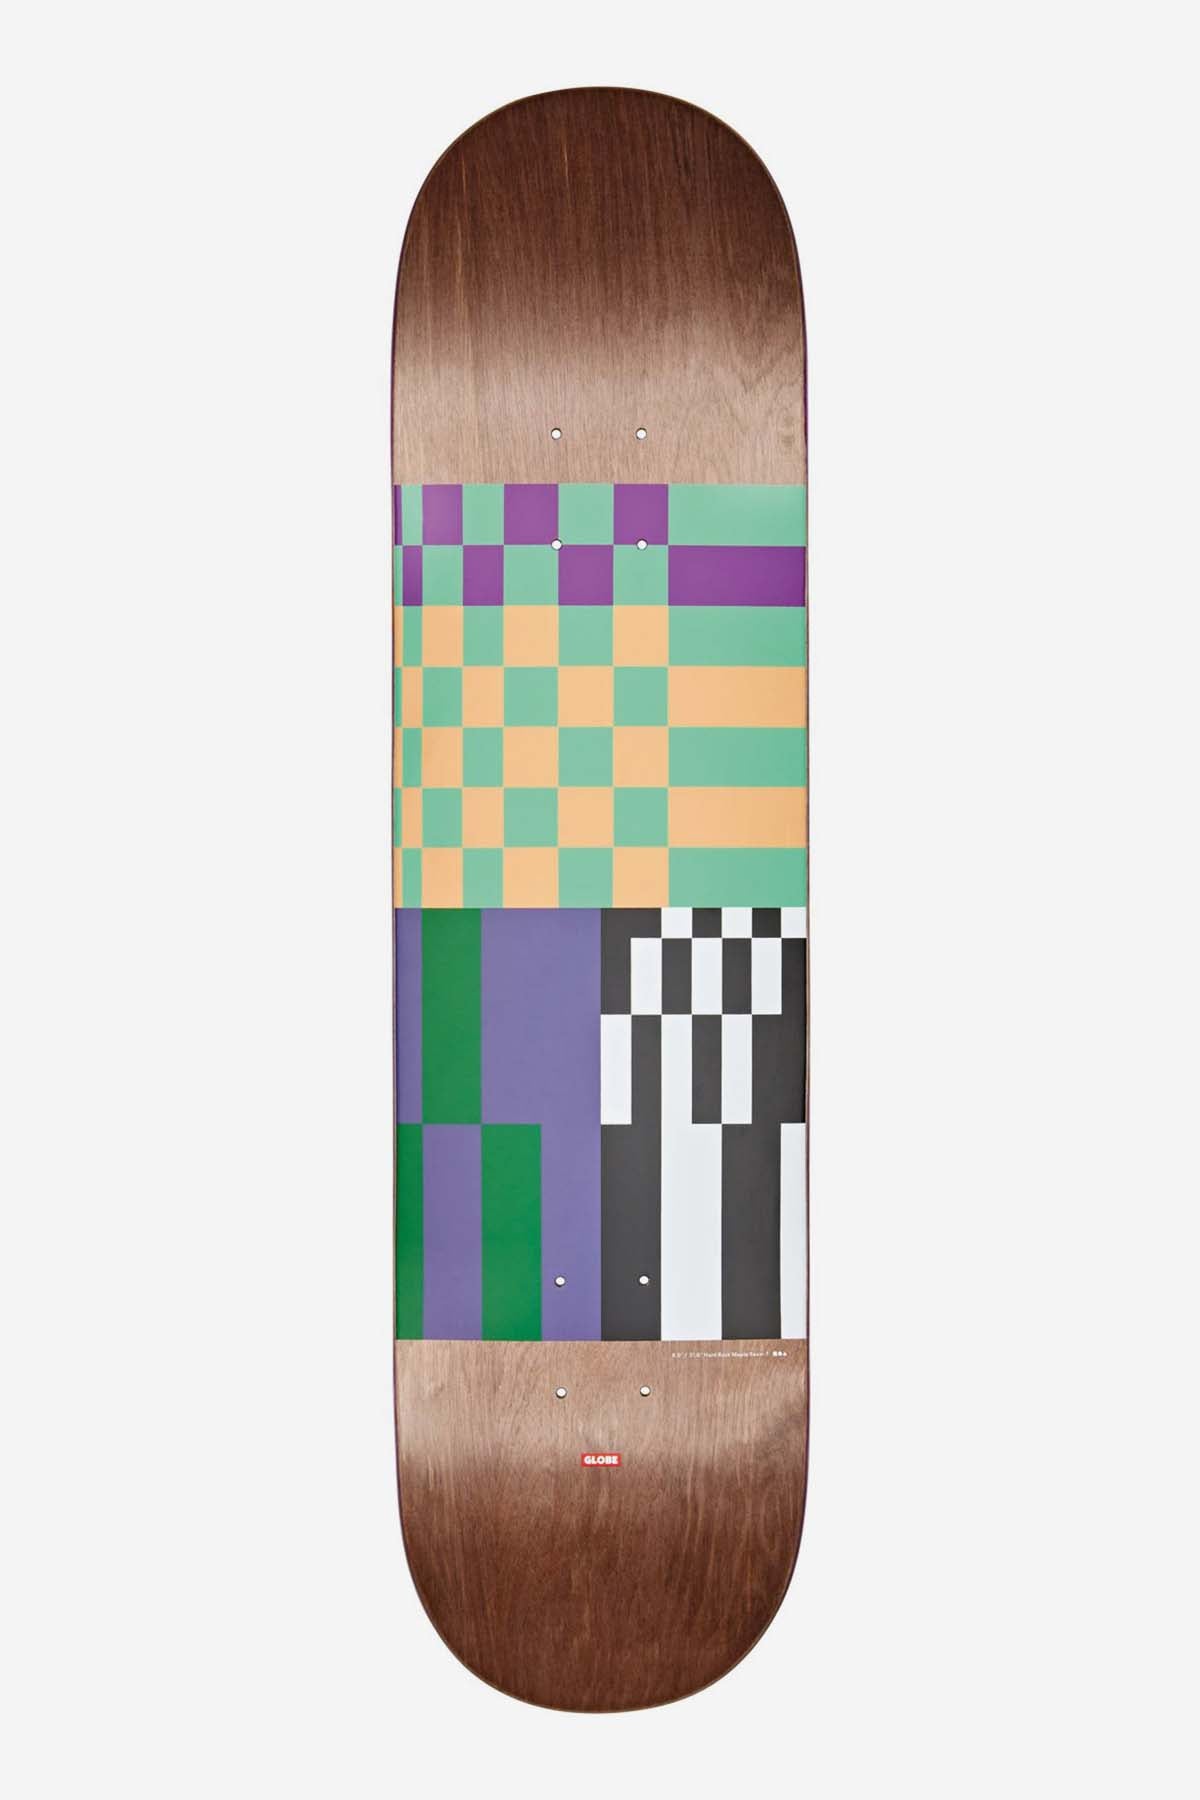 Globe - G2 Check, alstublieft - Dark Maple/Grunge - 8.0". Skateboard Deck